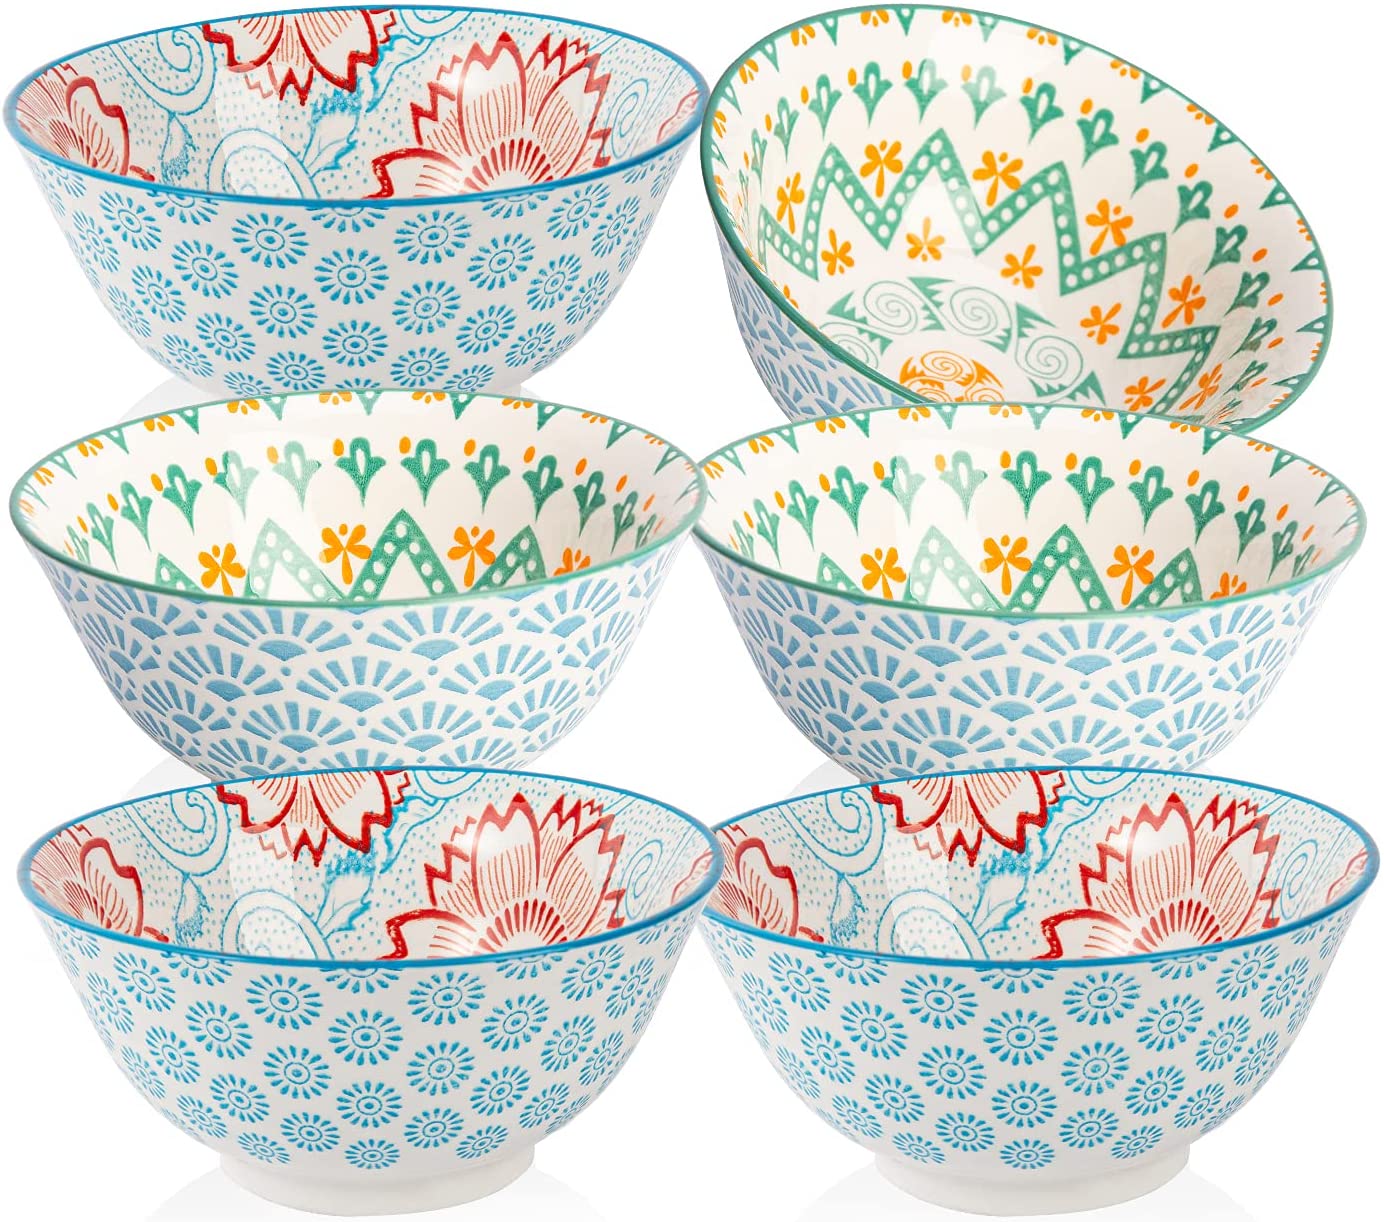 Cibeat Premium Porcelain Bowls Set (With Patterns)